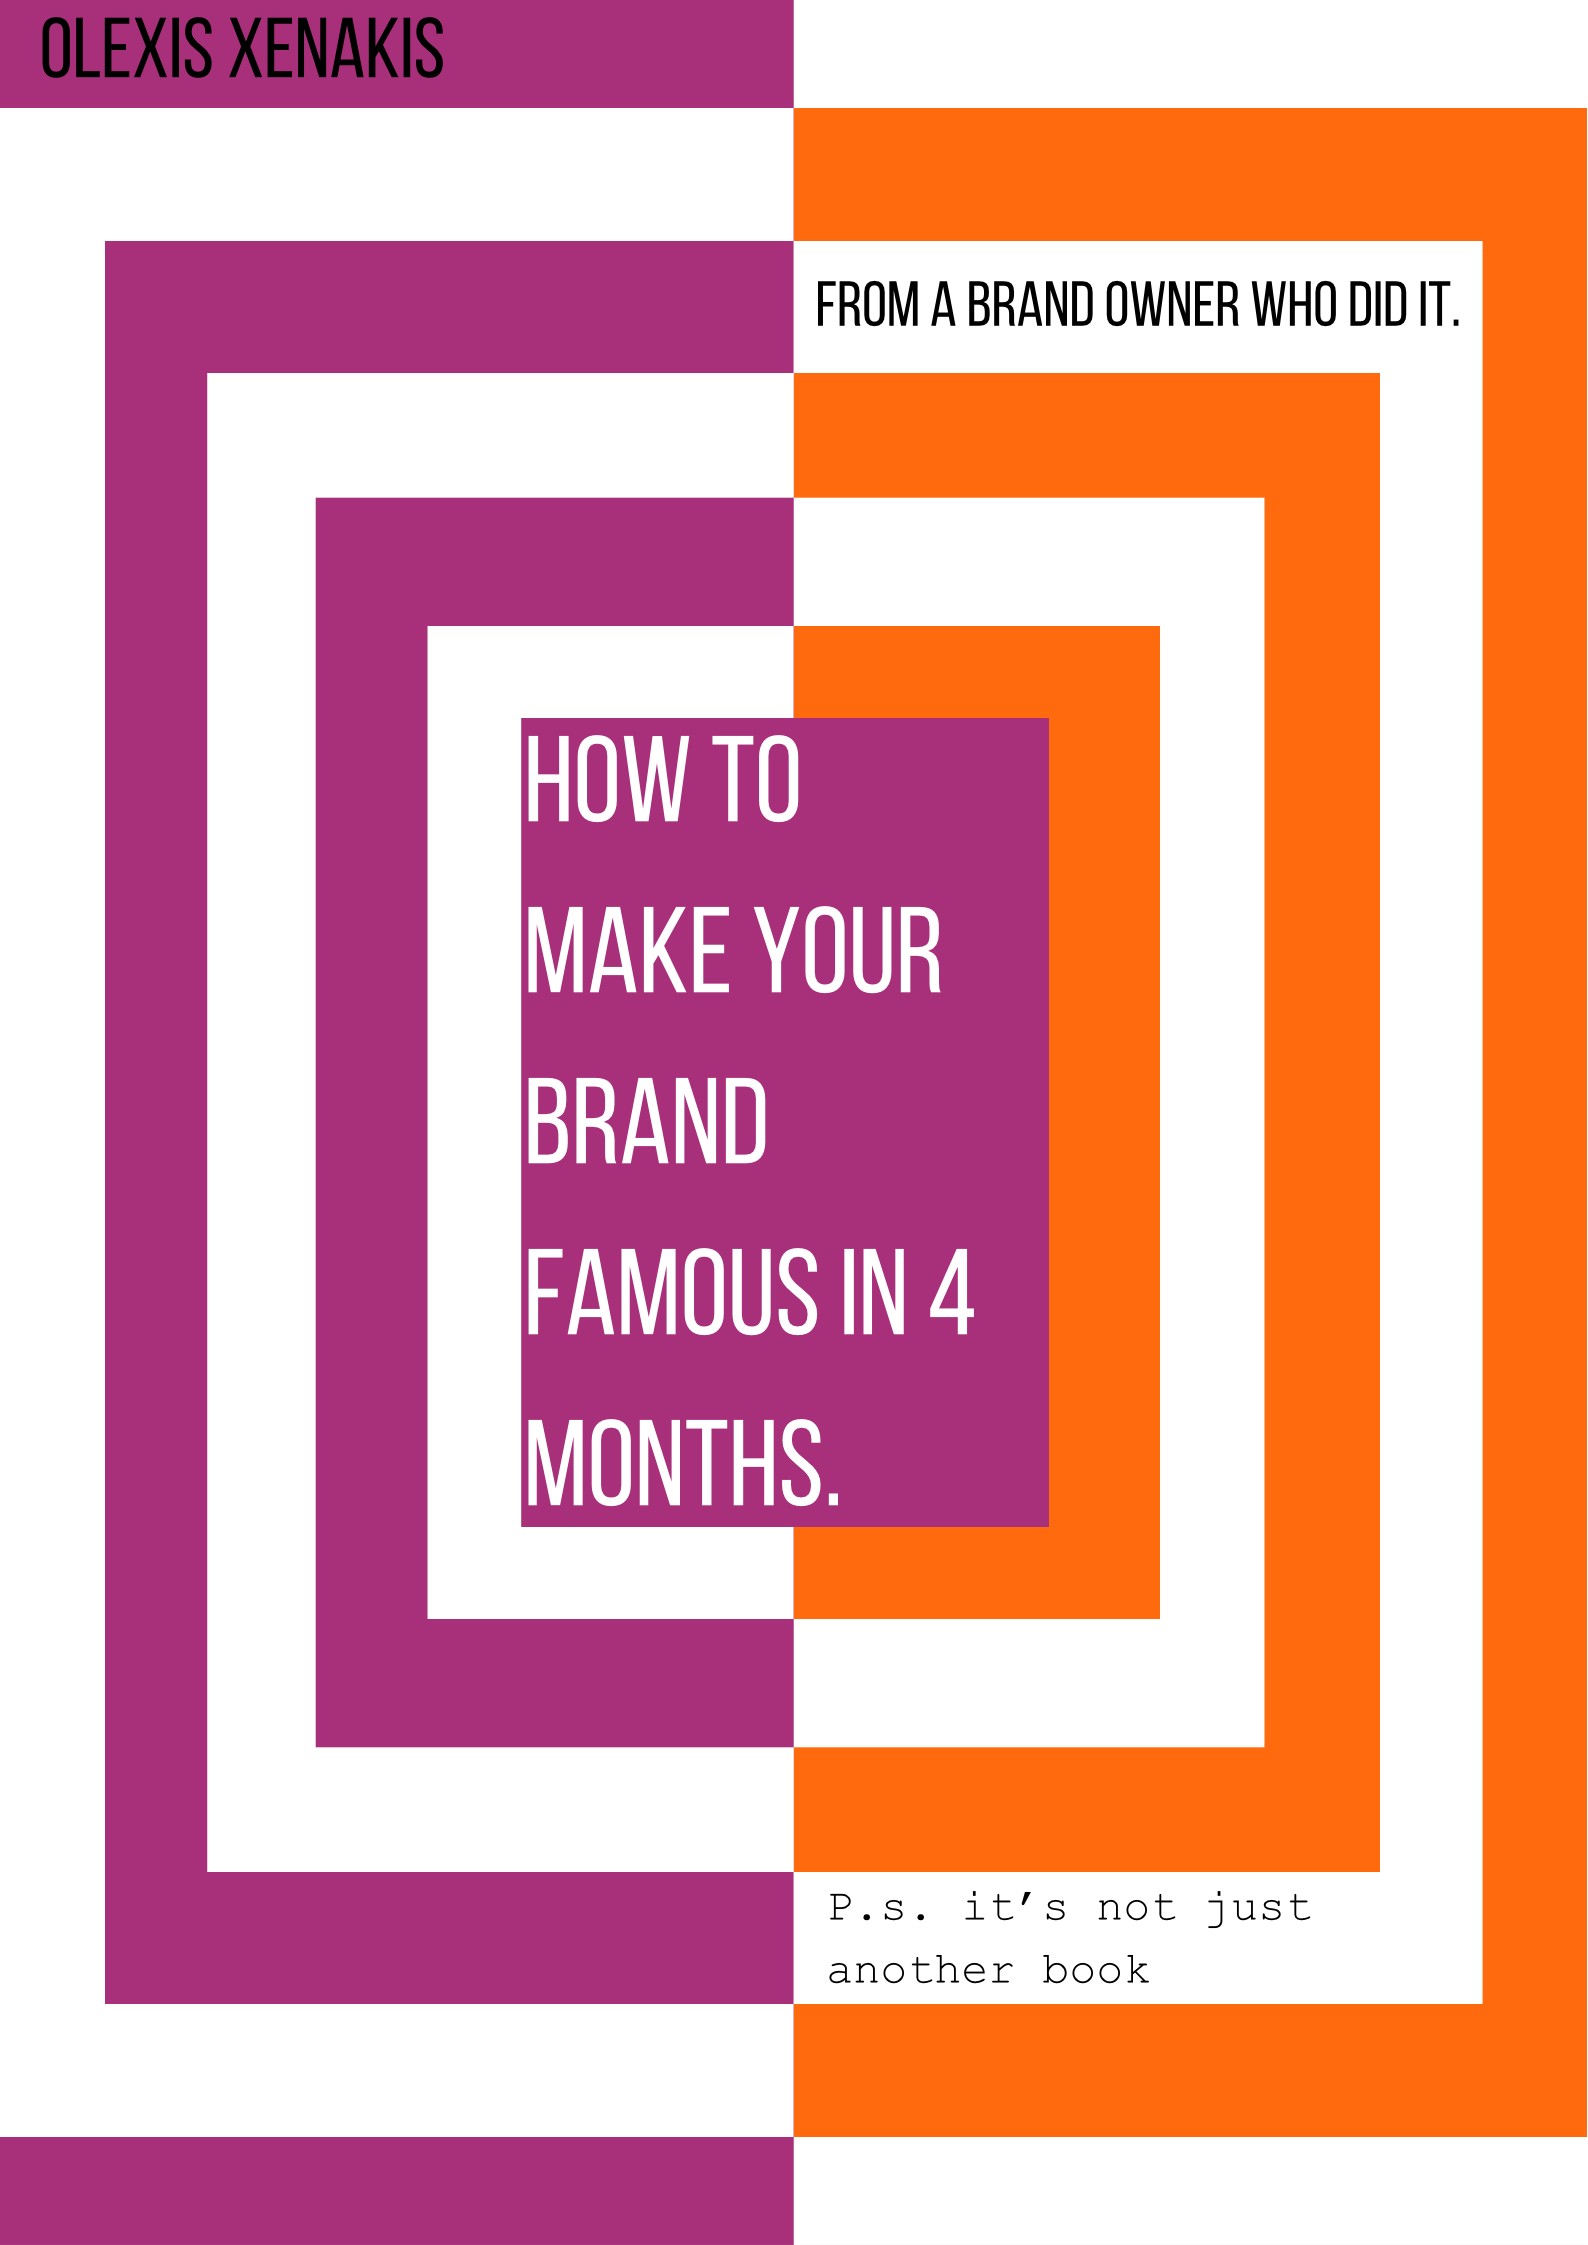 Die berühmte Designerin Ollia Tzarina (Olexis Xenakis) veröffentlicht ein Buch: “Wie man seine Marke berühmt macht”